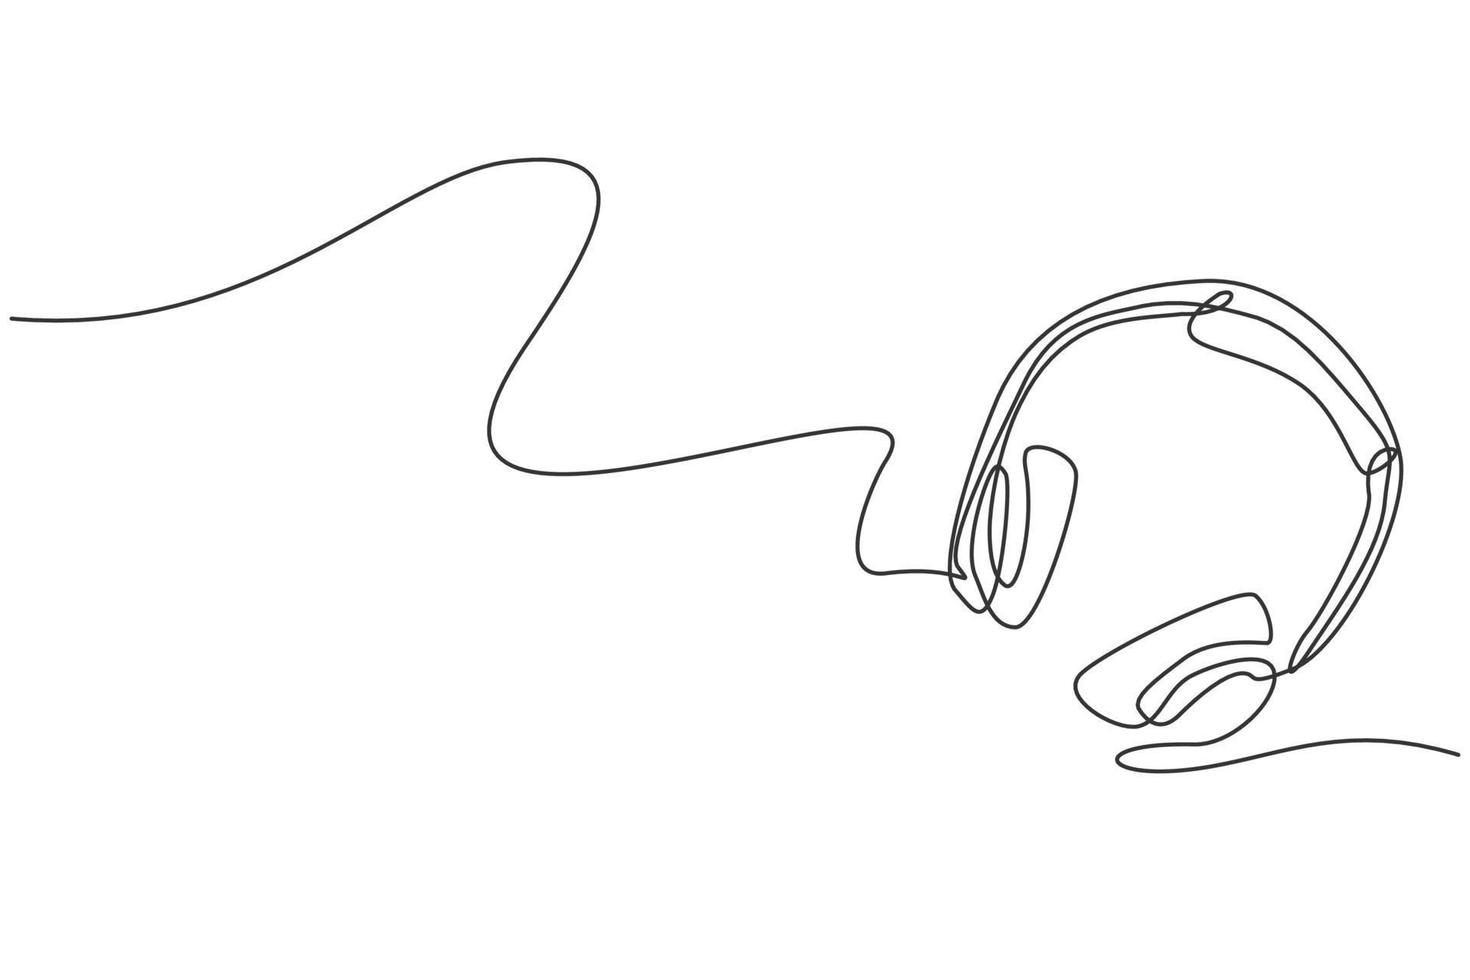 enda kontinuerlig ritning av hörlurar uppifrån. musikinspelningsutrustning verktyg koncept. modern en linje rita design grafisk vektor illustration